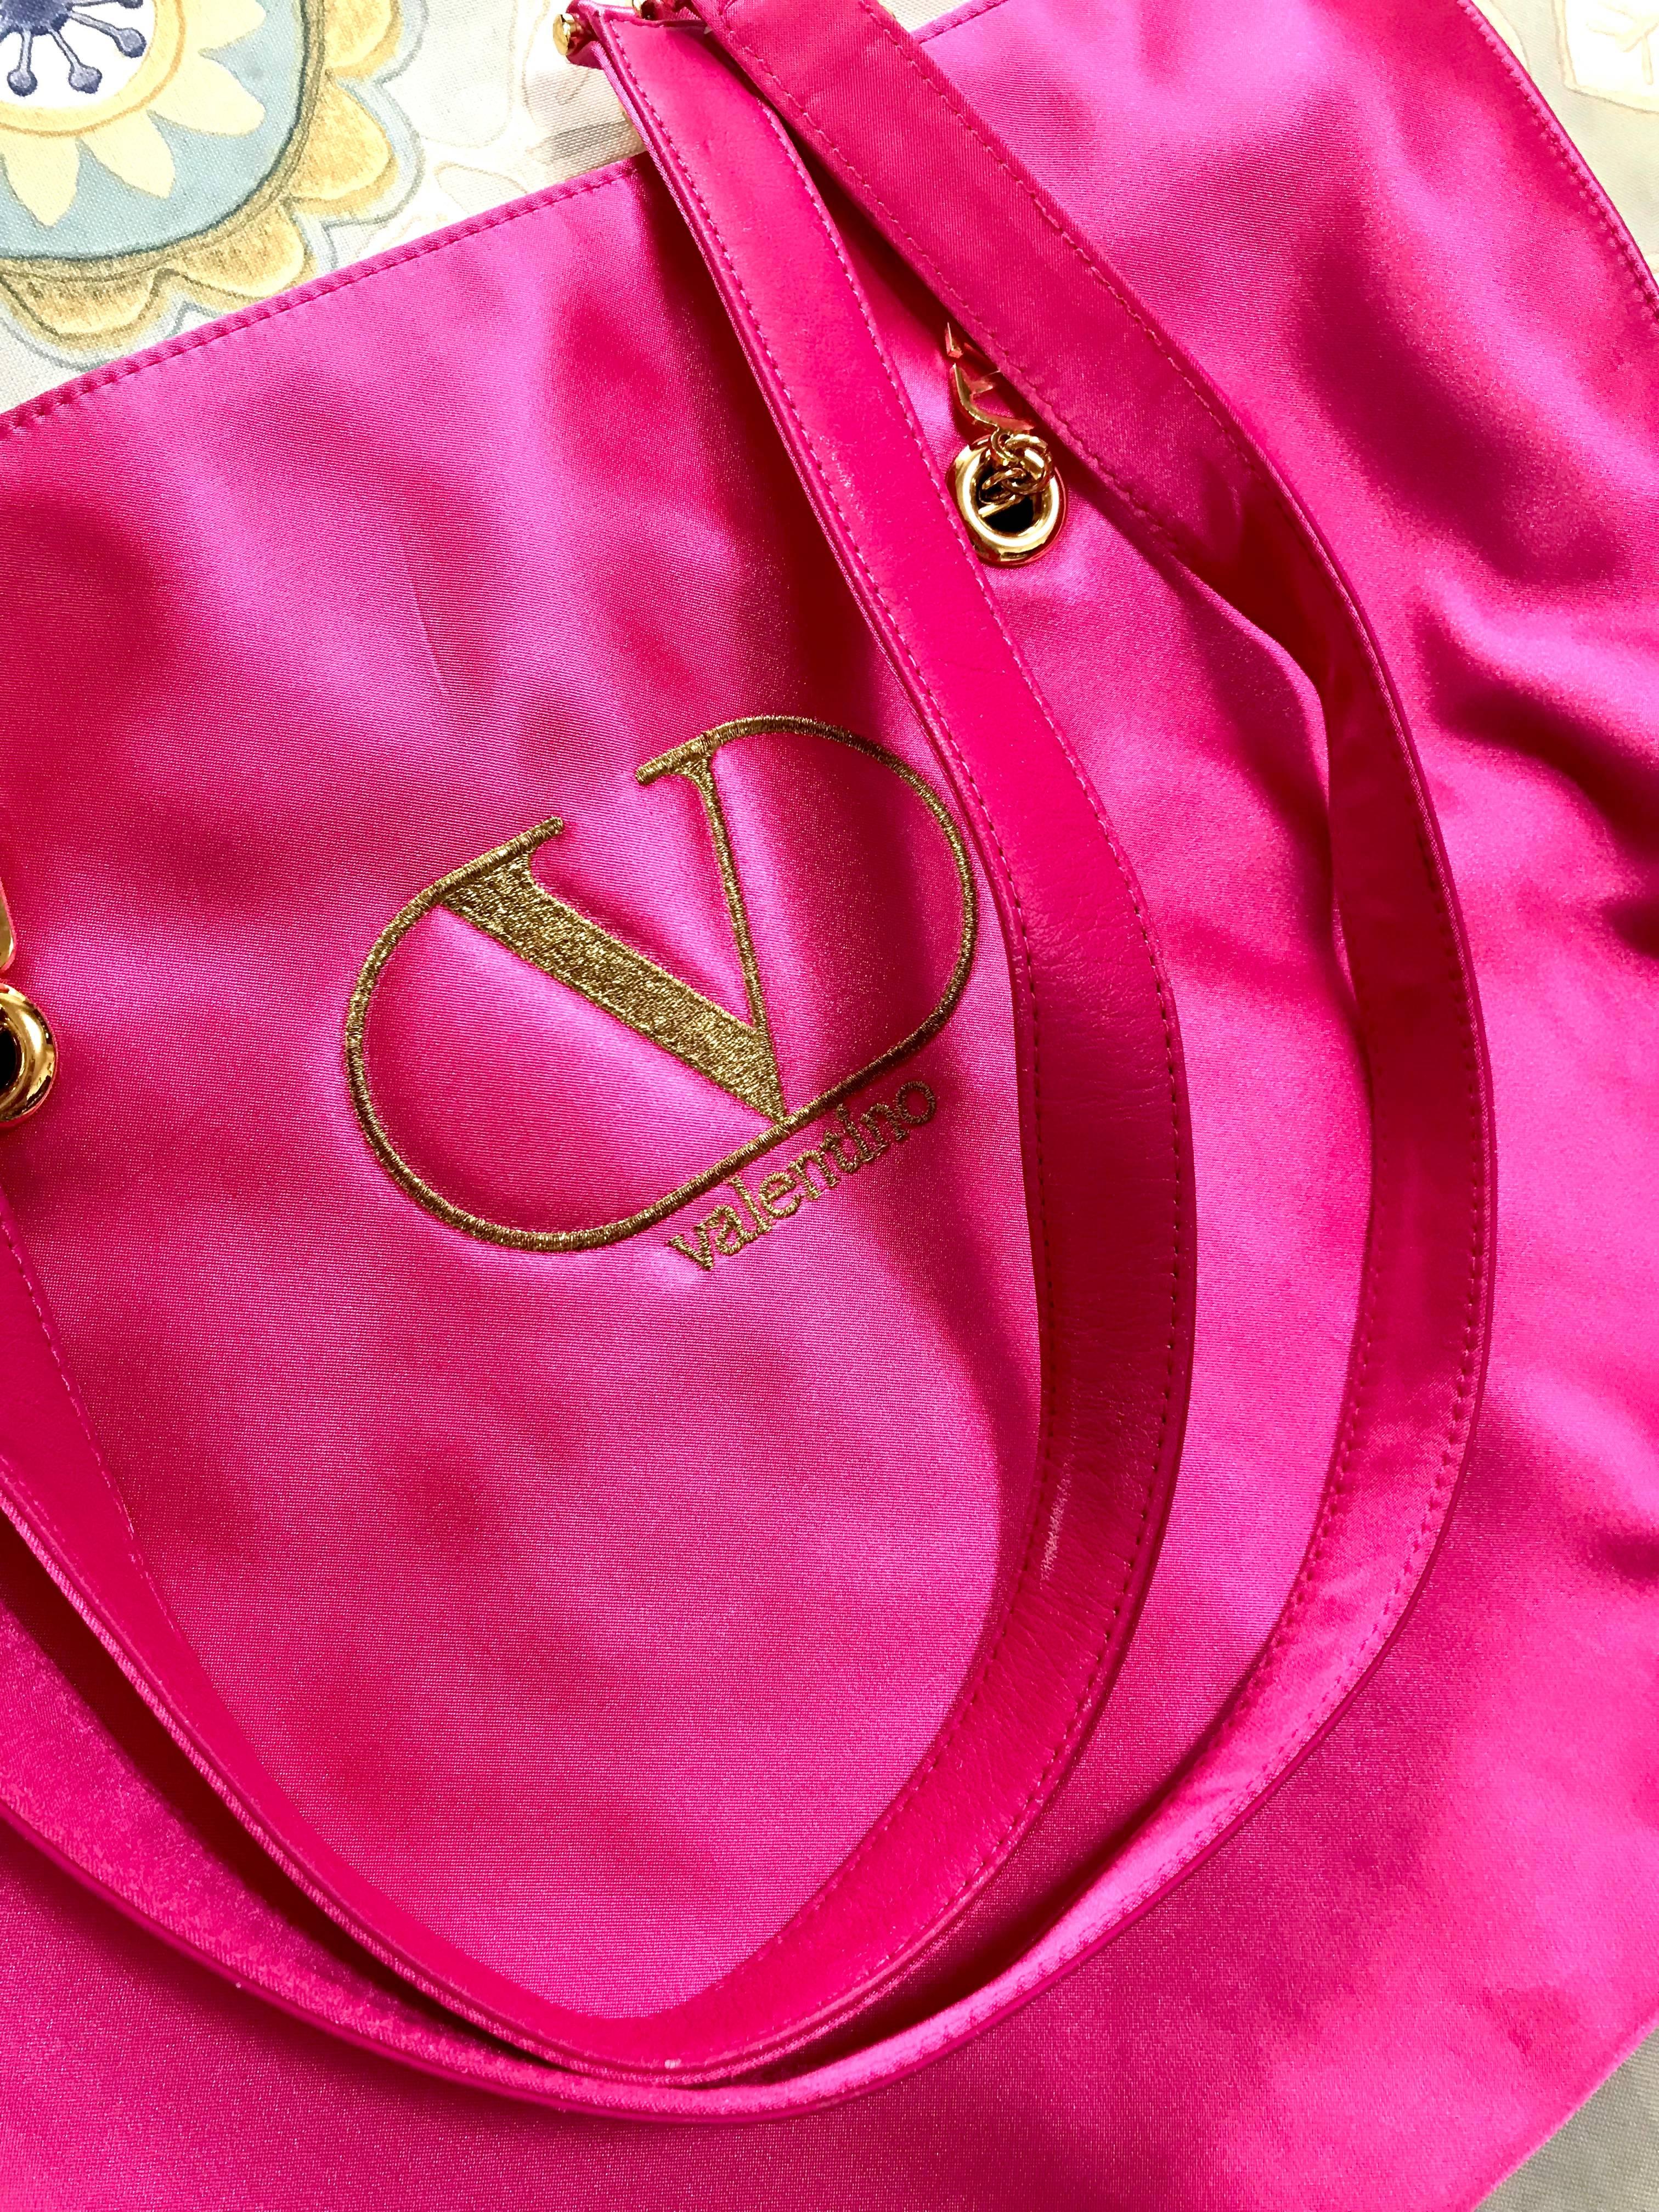 purse brand with v logo